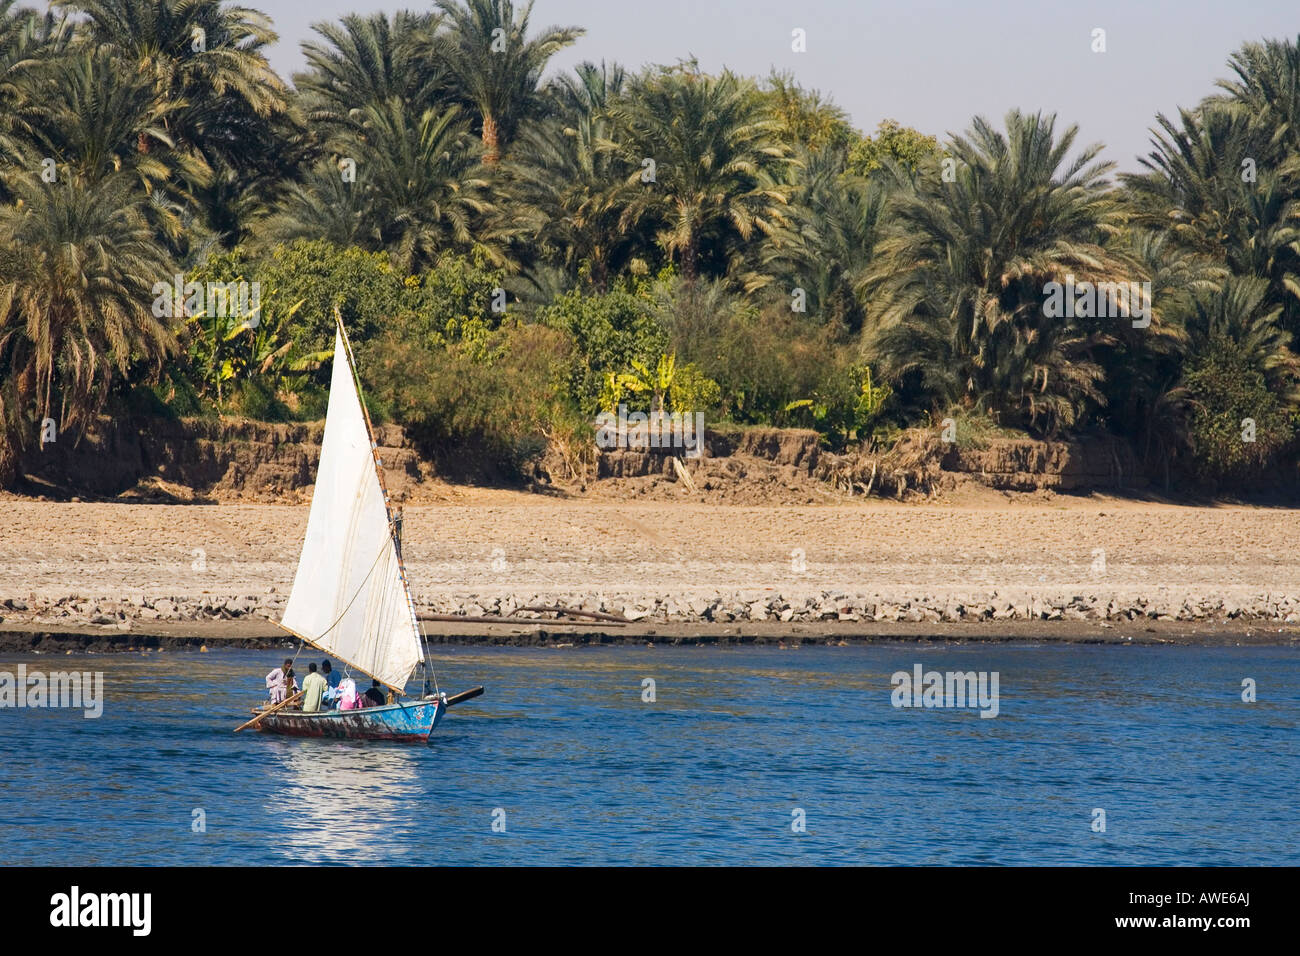 Felouque naviguant sur le Nil aux beaux jours avec ciel bleu Egypte Afrique du Nord Banque D'Images